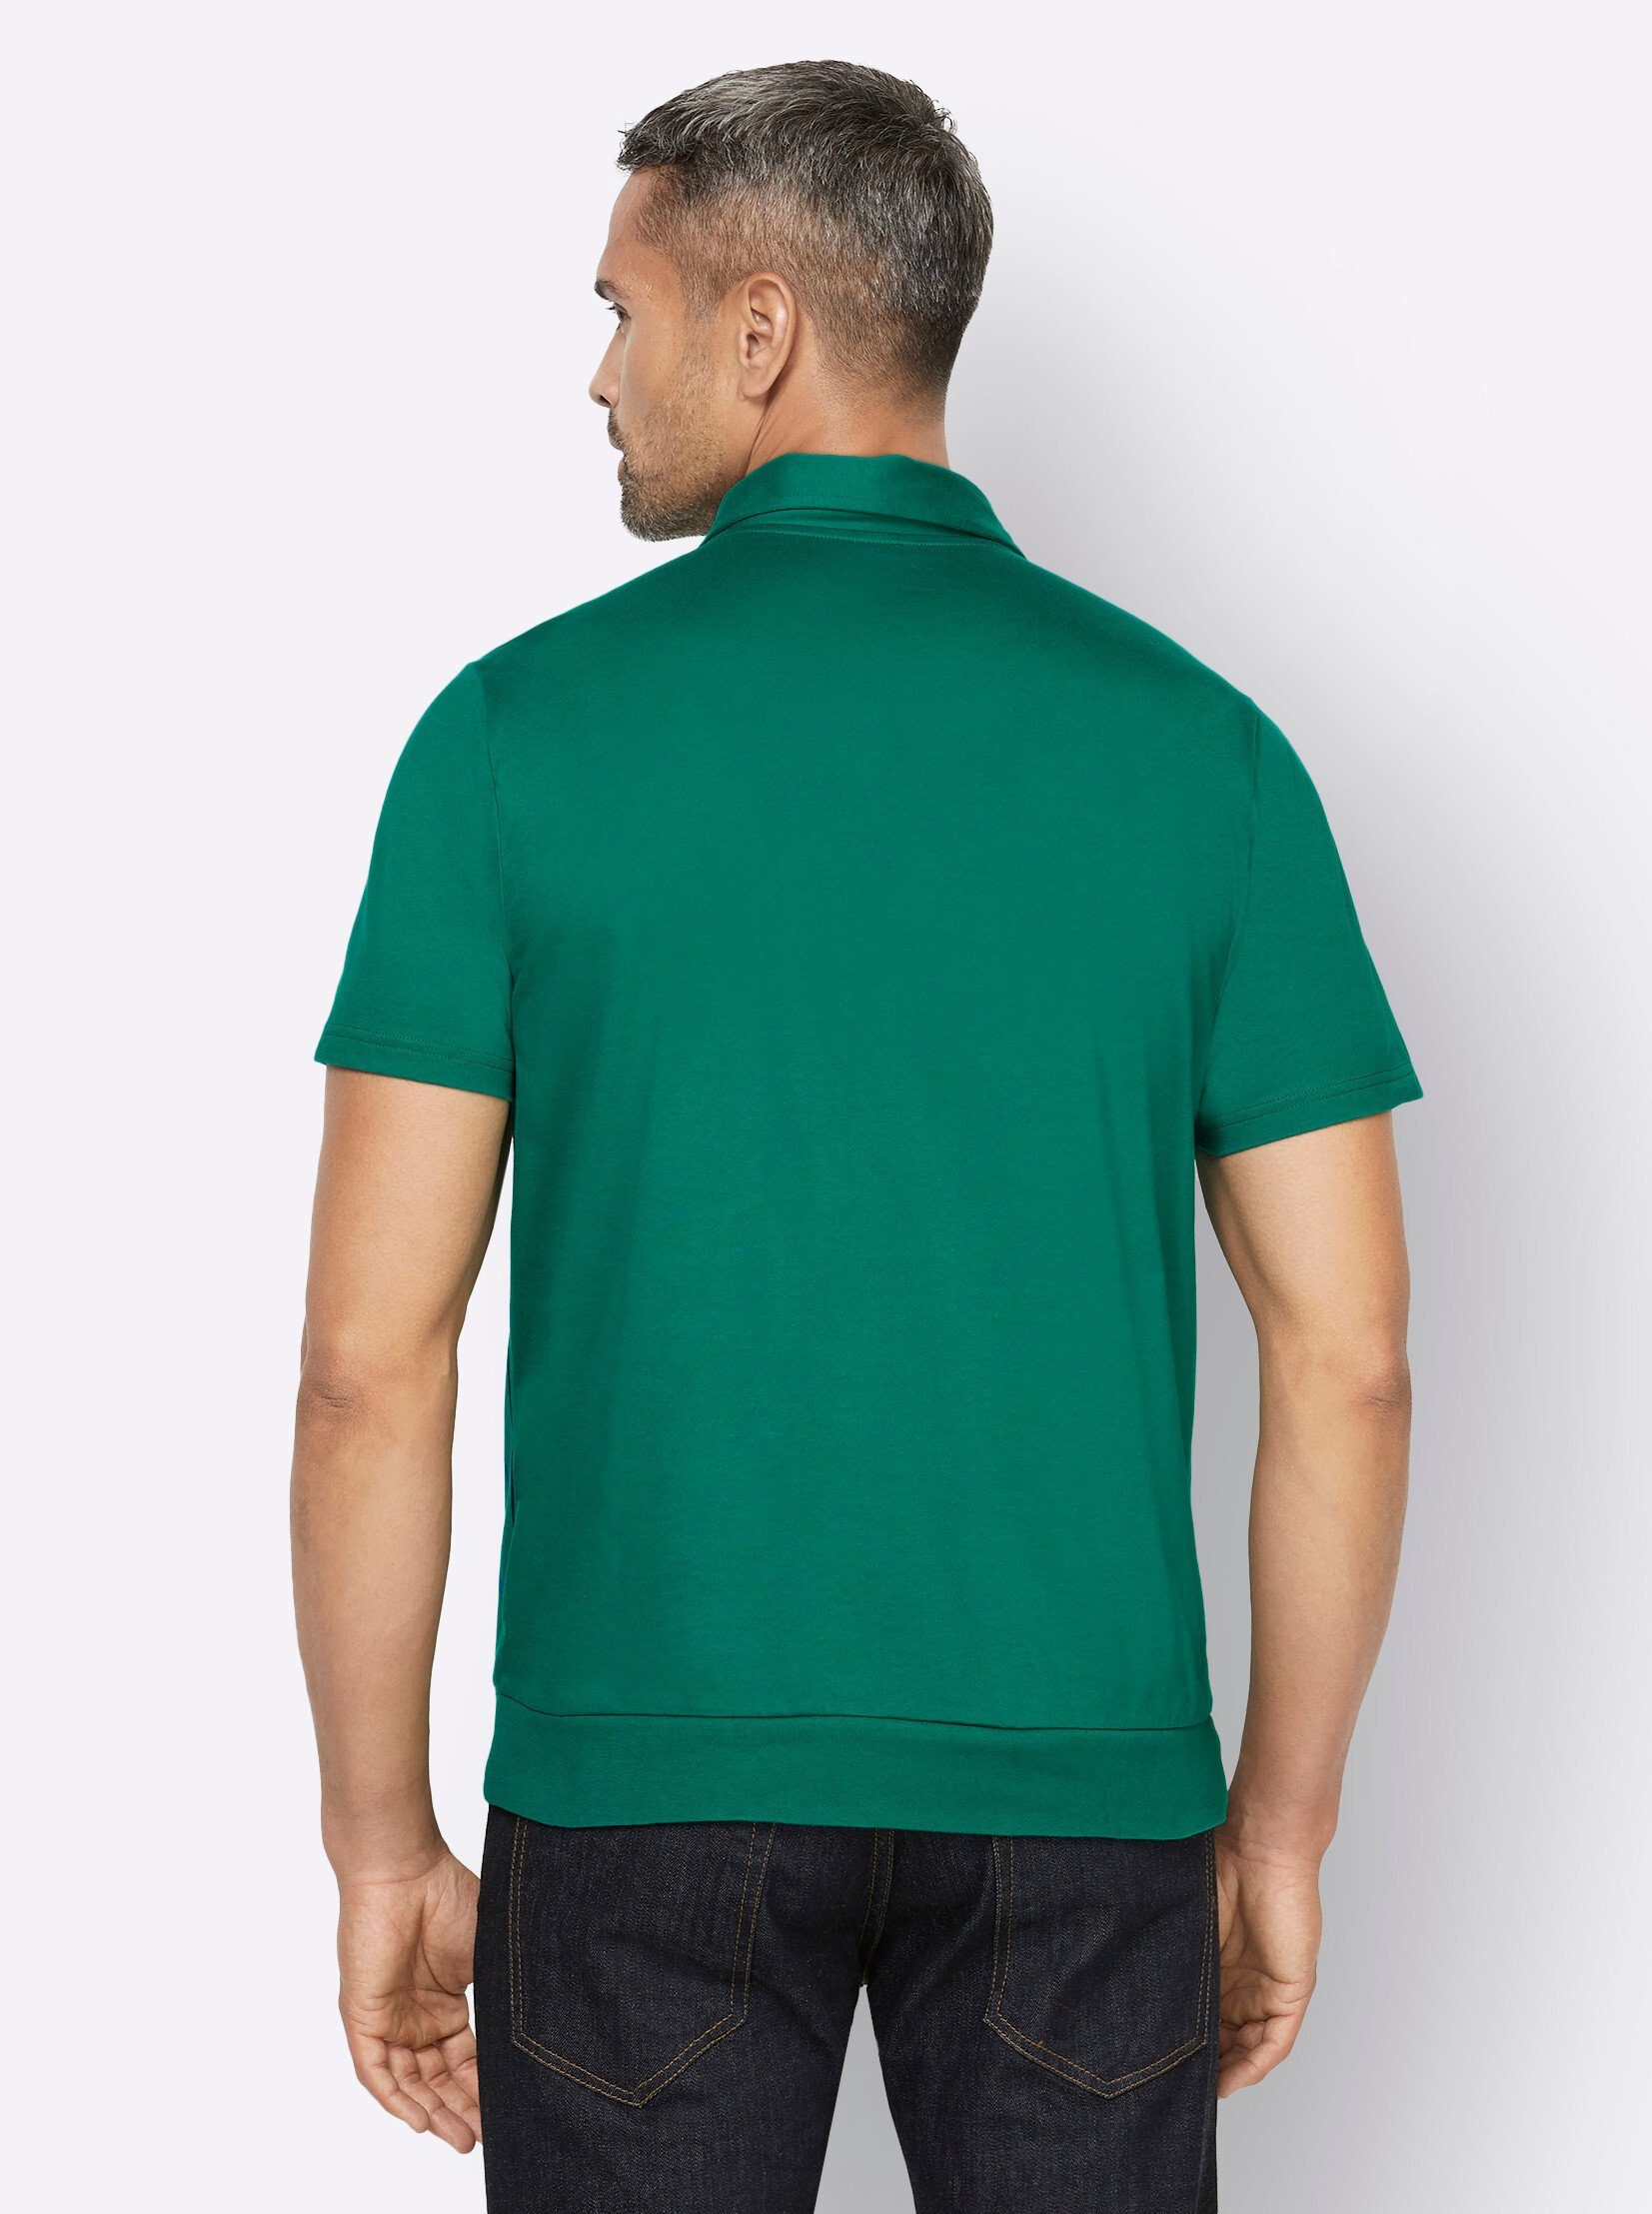 grün-gestreift an! Sieh T-Shirt